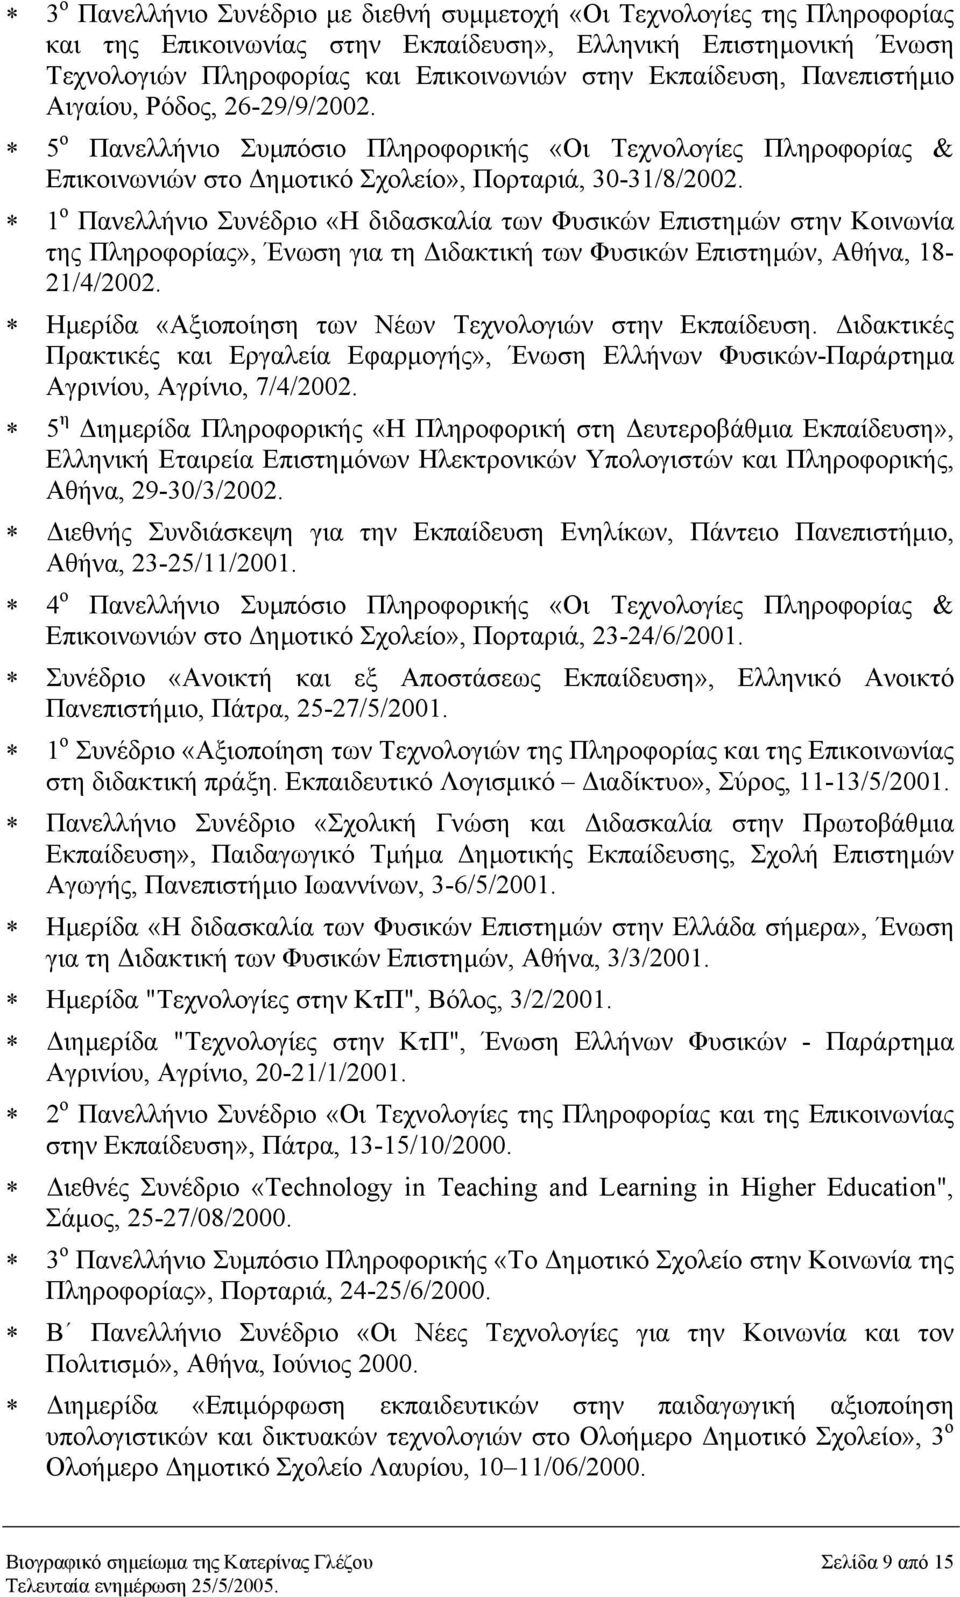 1 ο Πανελλήνιο Συνέδριο «Η διδασκαλία των Φυσικών Επιστηµών στην Κοινωνία της Πληροφορίας», Ένωση για τη ιδακτική των Φυσικών Επιστηµών, Αθήνα, 18-21/4/2002.